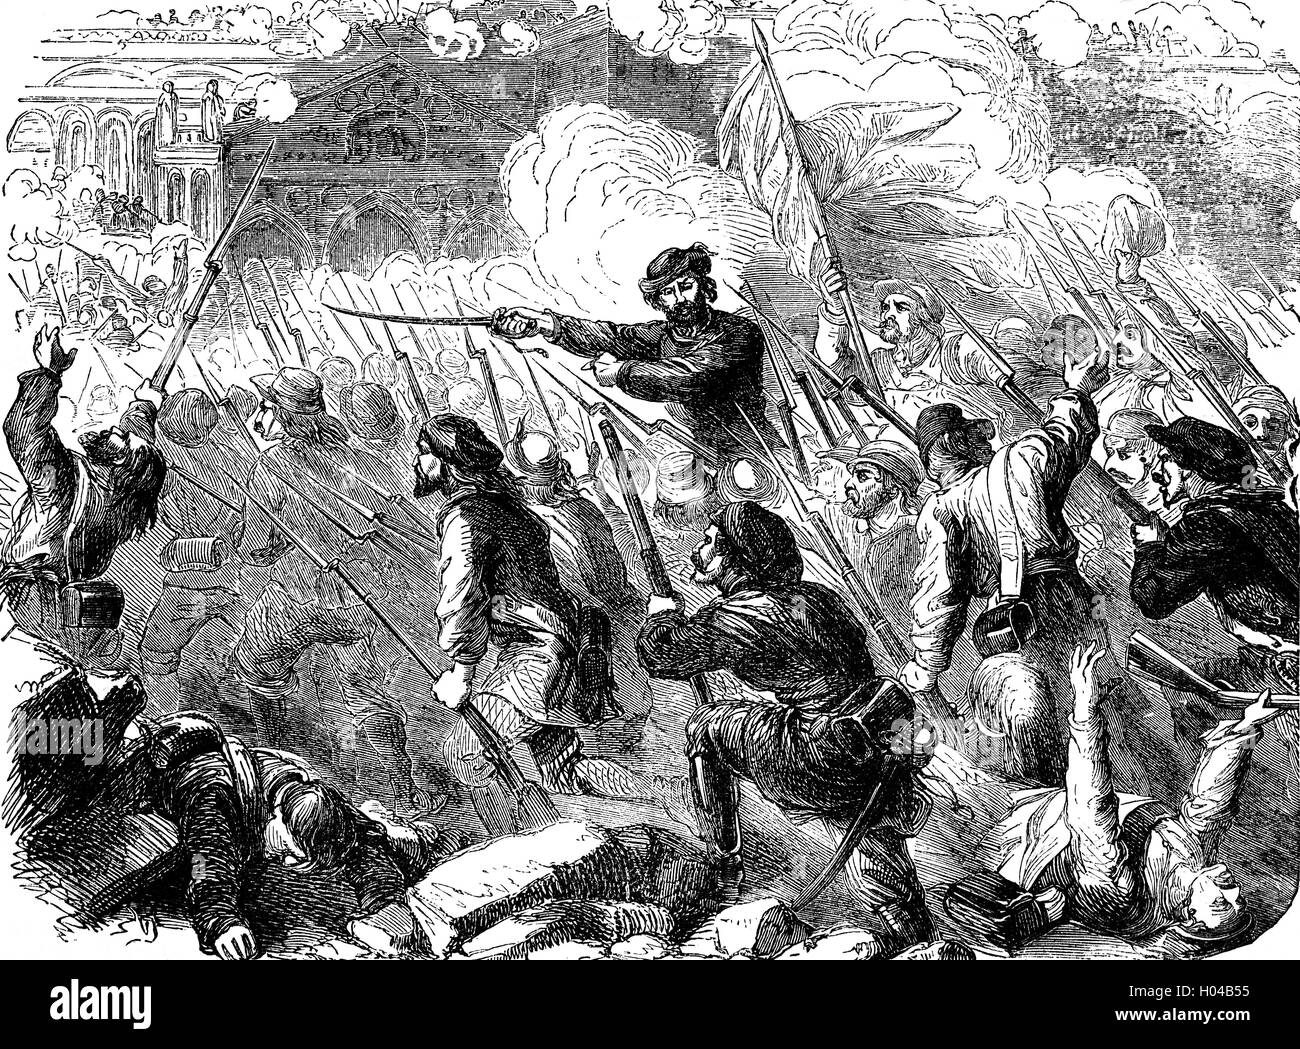 General Garibaldi in Palermo während der Expedition von tausend, die im Jahre 1860 stattfand. Ein Korps von Freiwilligen unter der Leitung von Giuseppe Garibaldi landete in Sizilien um das Königreich beider Sizilien, regiert von den Bourbonen zu erobern. Die Expedition war die letzte territoriale Eroberung vor der Gründung des Königreichs Italien am 17. März 1861. Stockfoto